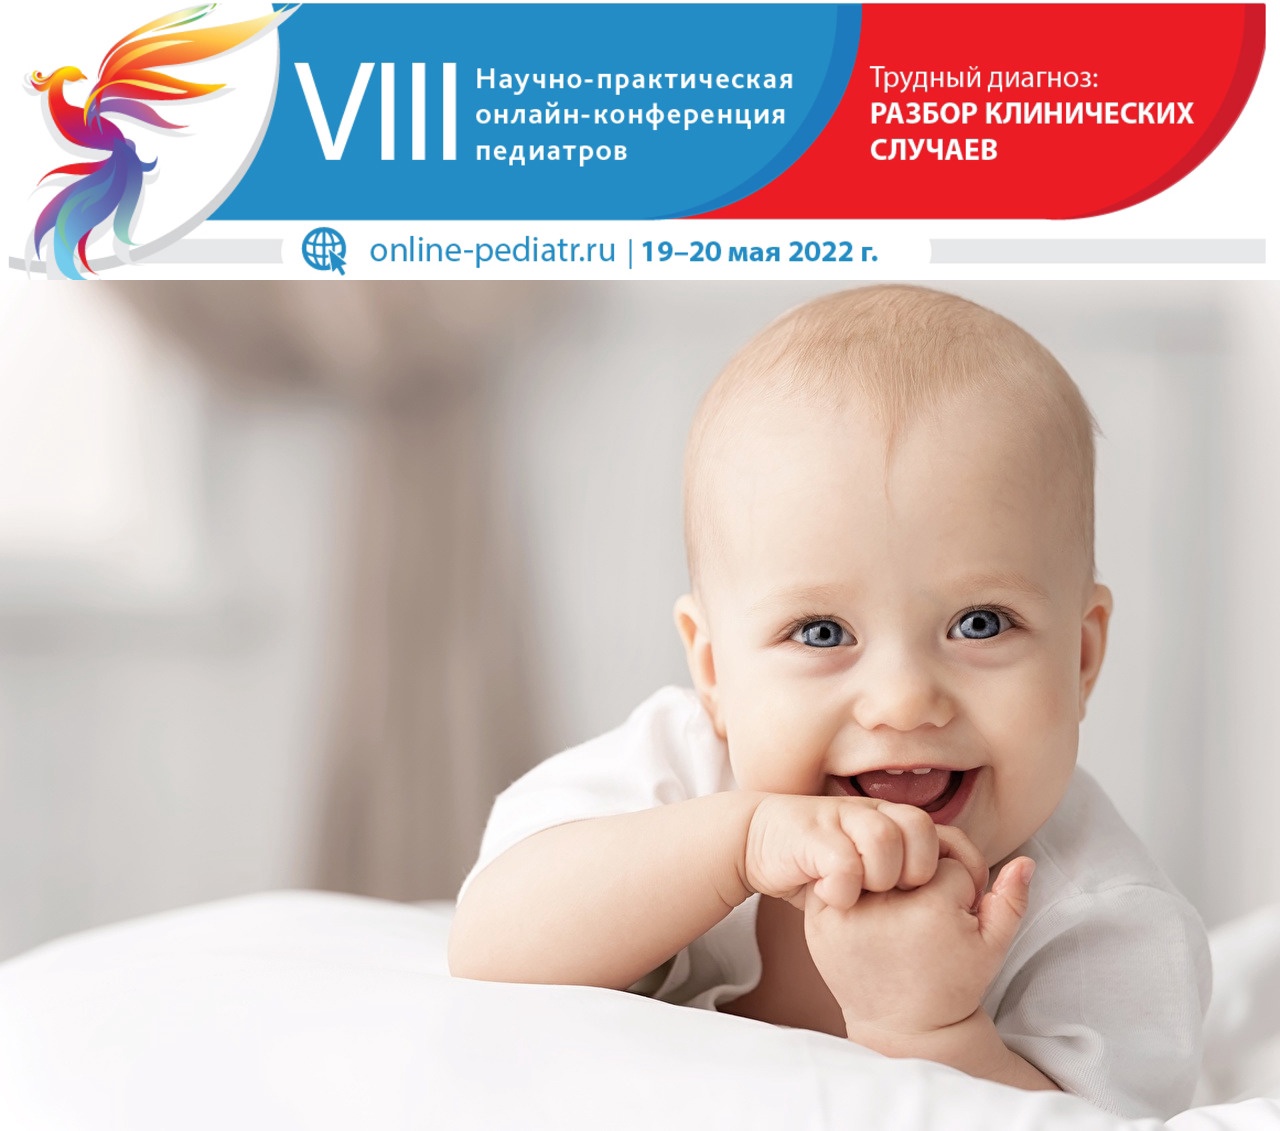 VIII Научно-практическая онлайн-конференция педиатров «Трудный диагноз: разбор клинических случаев»